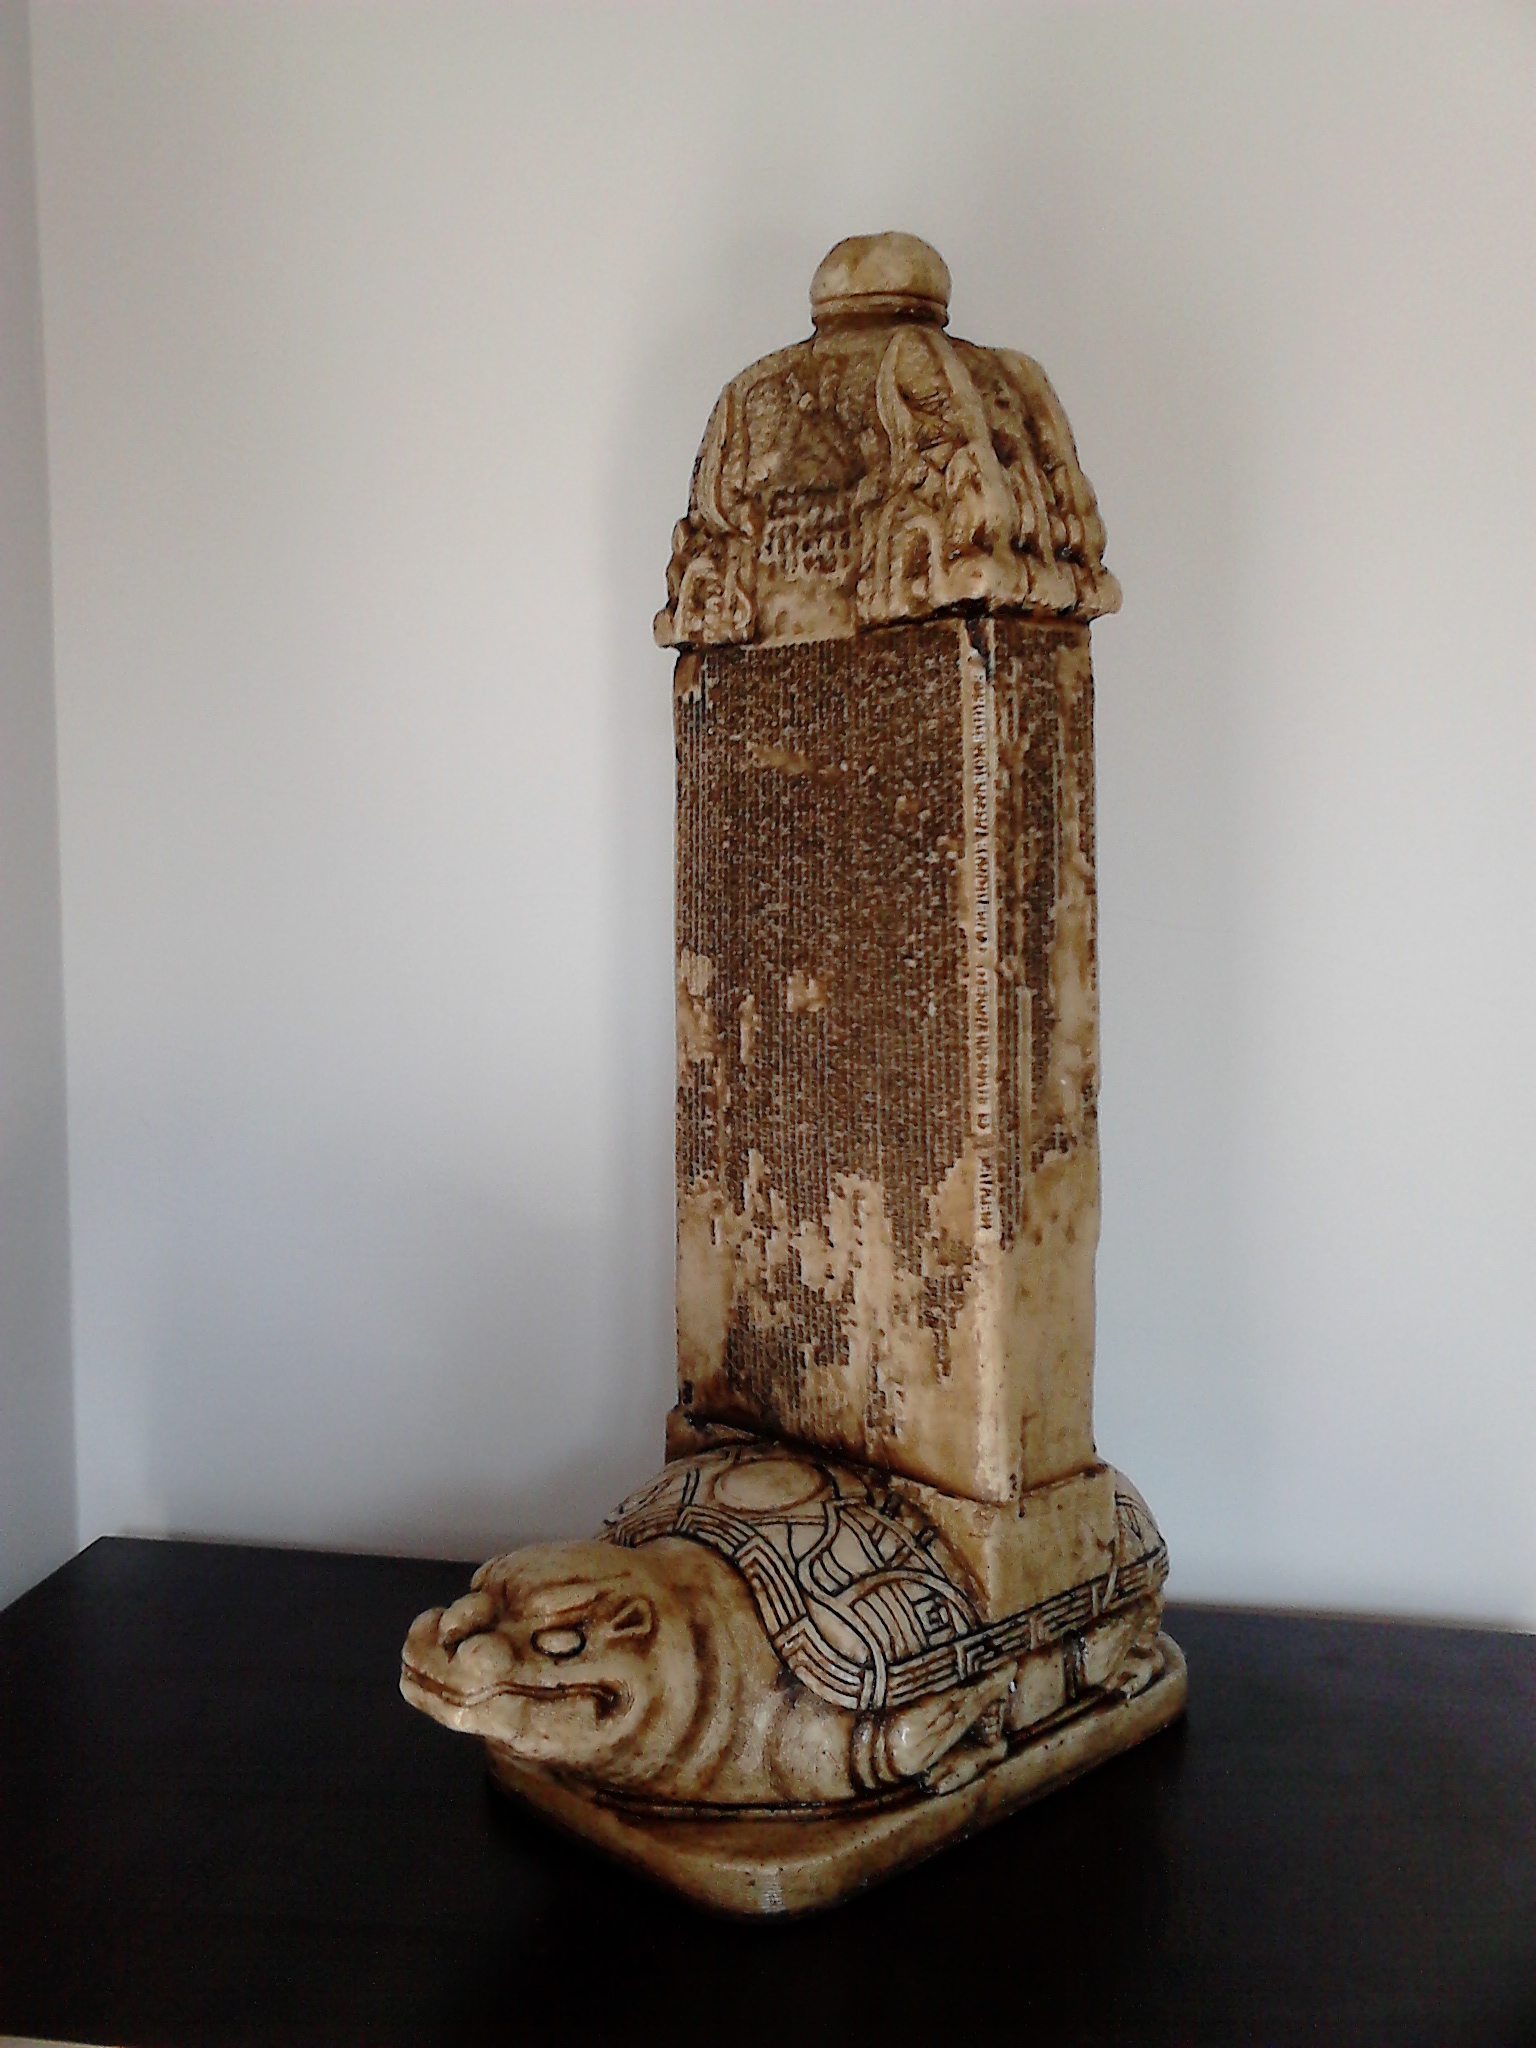 orhun yazıtları biblo heykel yaptır yapımı göktürk kitabeleri abideleri anıtı anıtları resimleri modelleri imalat üretim kültür tarih türk sanatları medeniyeti sanat medeniyet ejderha kap